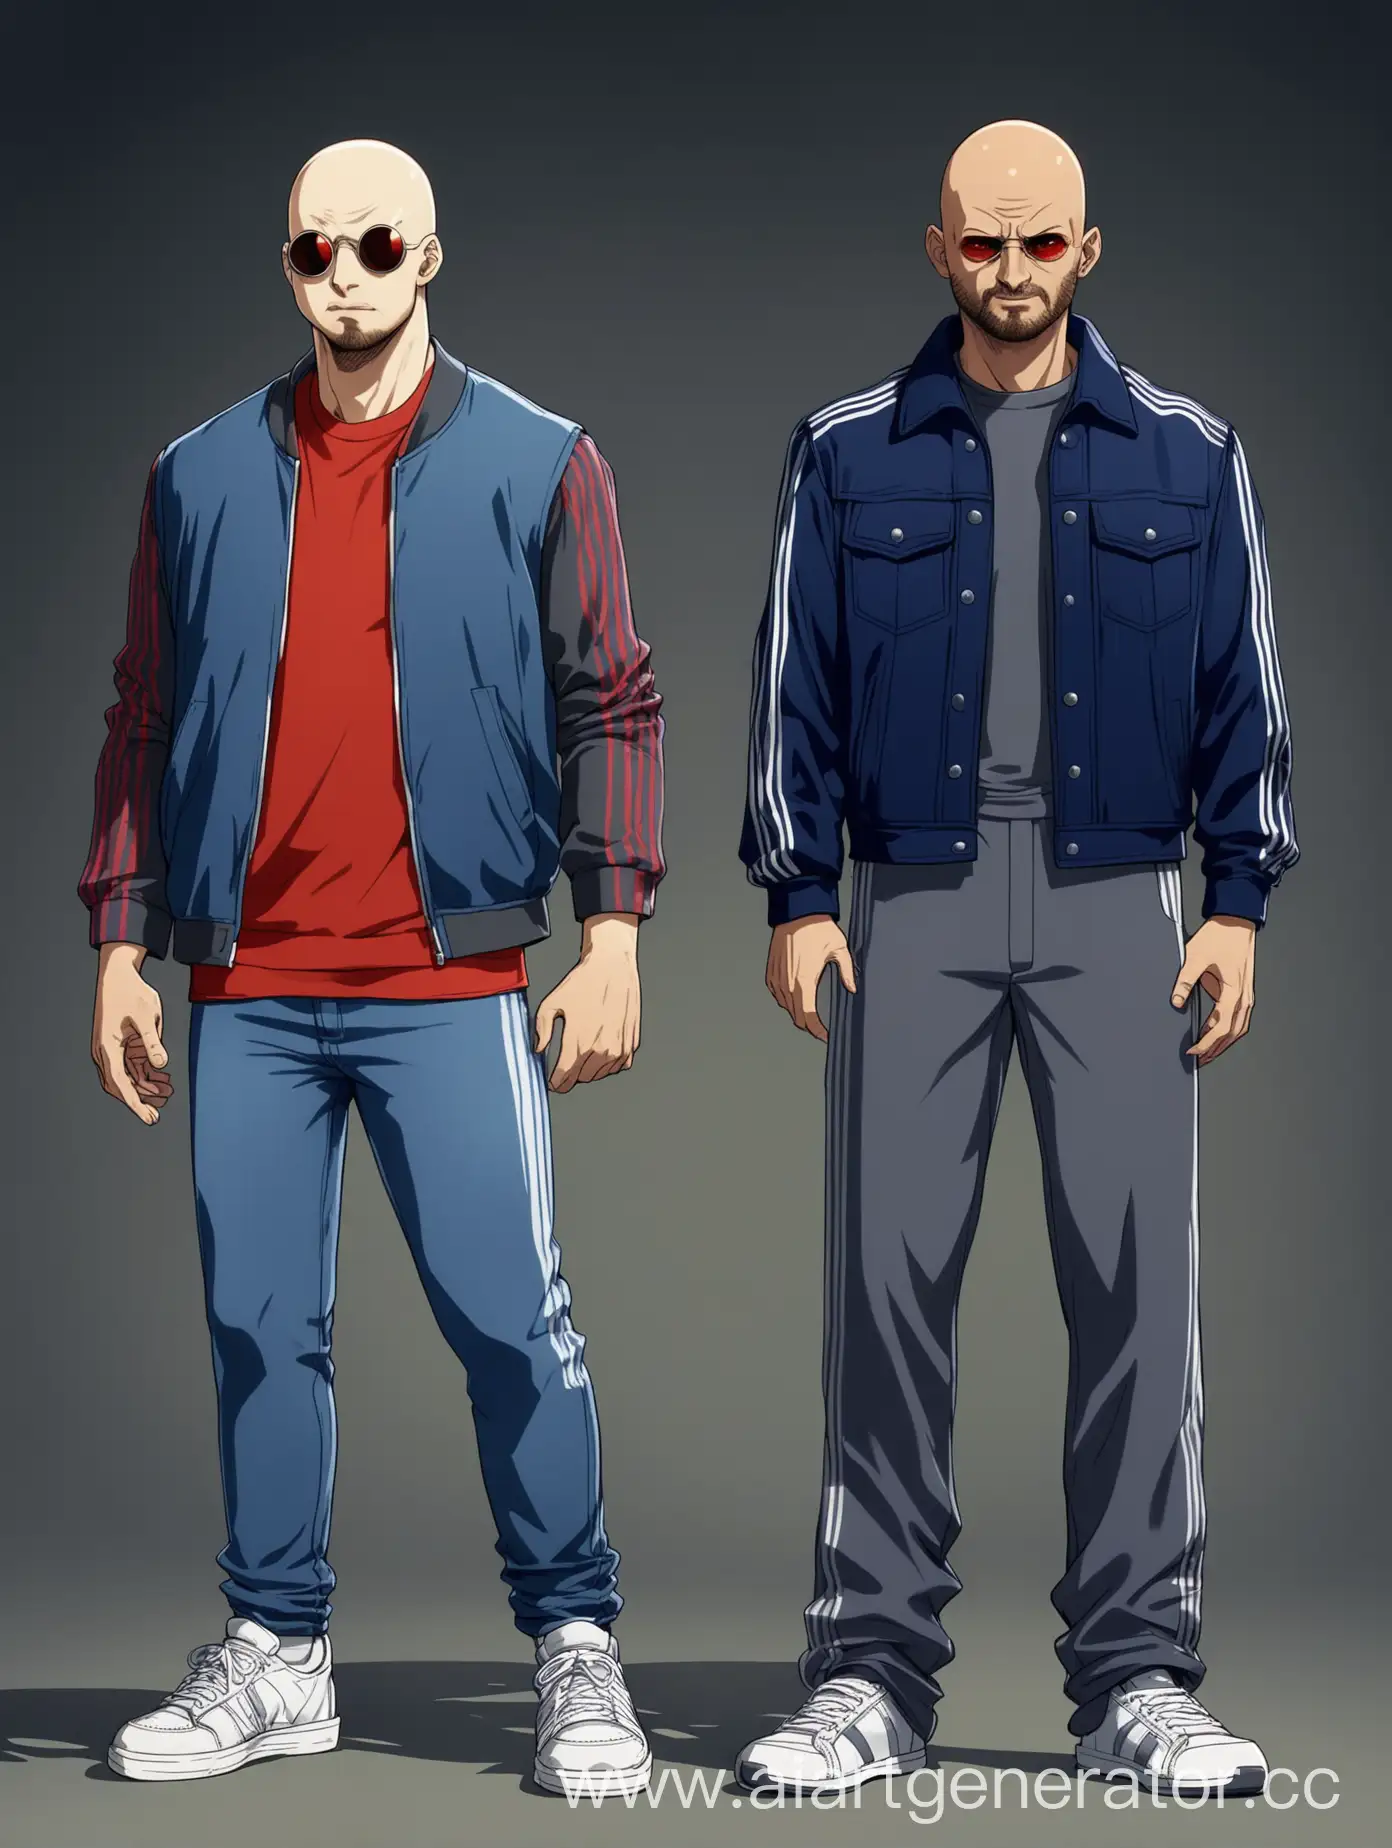 На картинке стоят два персонажа бок о бок. Выглядят они примерно одинаково: одеты в джинсовую куртку с темно-серыми рукавами, спортивные штаны с полосками и белых кроссовках. Отличаются они лишь тем, что у персонажа слева куртка фиолетовая, а у персонажа справа красная. Рукава у обоих темно-серые. Они оба лысые и легкой небритостью. На глазах кругловатые солнцезащитные очки. Выражения лица злое. Поза в готовности к атаке. В руках у одного пистолет, а у второго нож бабочка.